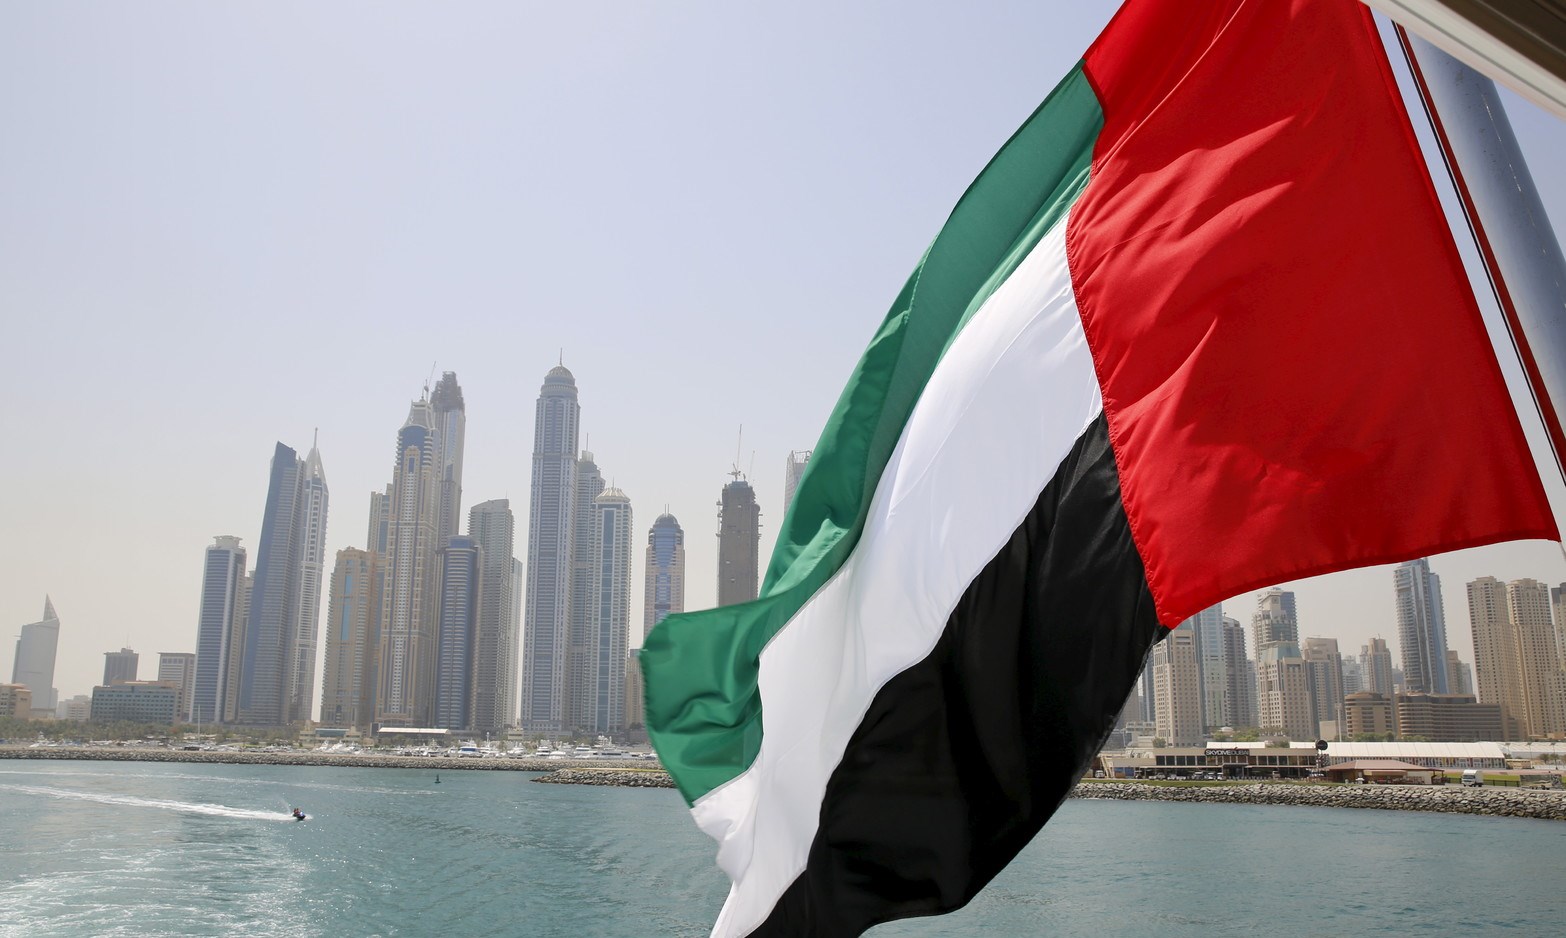 الإمارات الأولى في المنطقة والعاشرة عالمياً في مؤشر كفاءة الدول